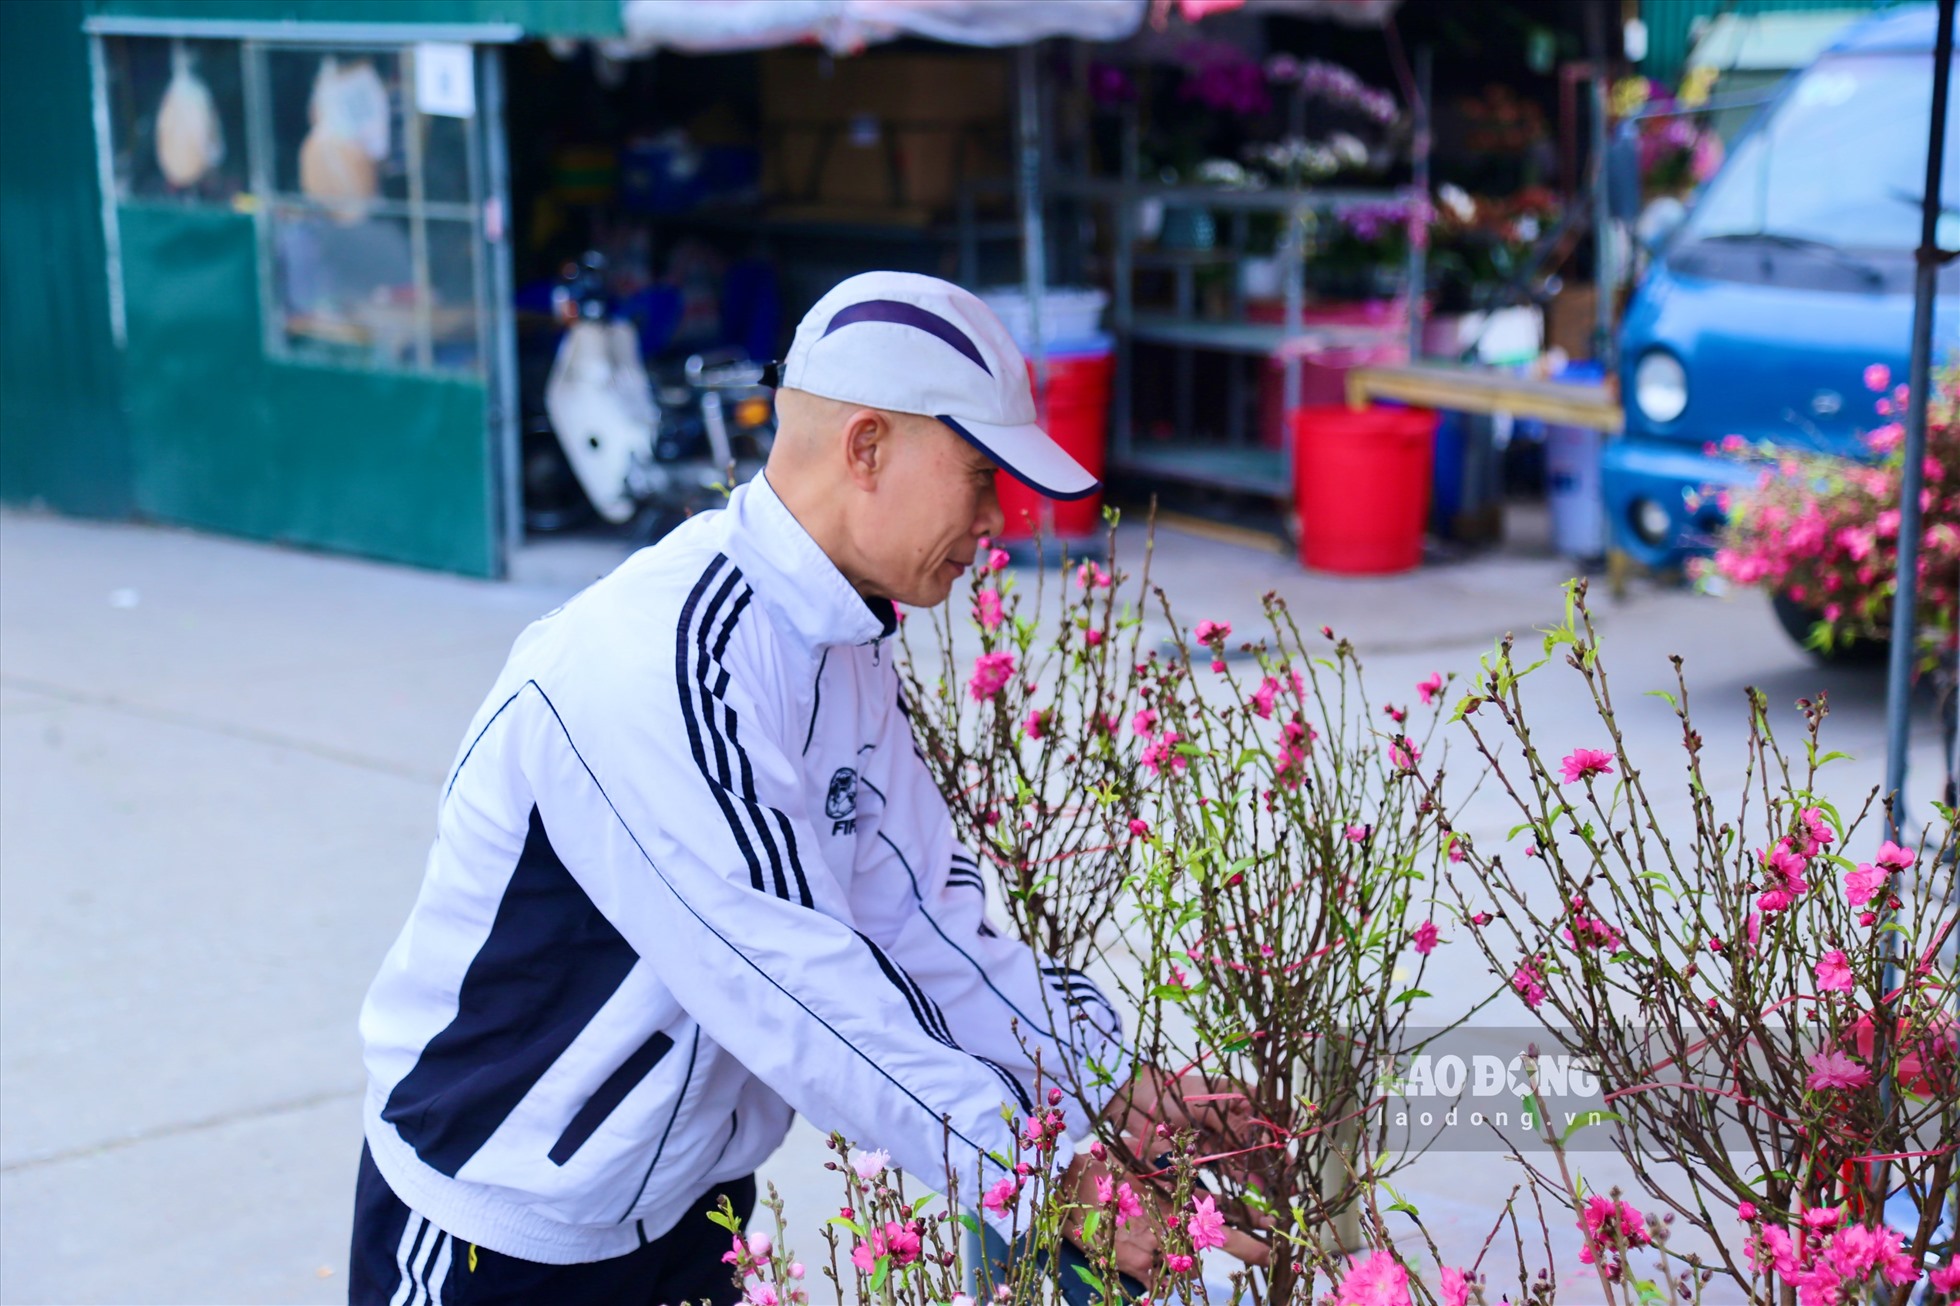 Ông Phạm Bình Luận ( Tây Hồ, Hà Nội) ra chợ hoa Quảng An tìm mua đào về chơi sớm. “Đào năm nay đẹp, nhiều nụ, nhiều hoa. Có cành đào thì thấy có không khí xuân, tâm hồn vui vẻ hơn'', ông Luận cho hay.